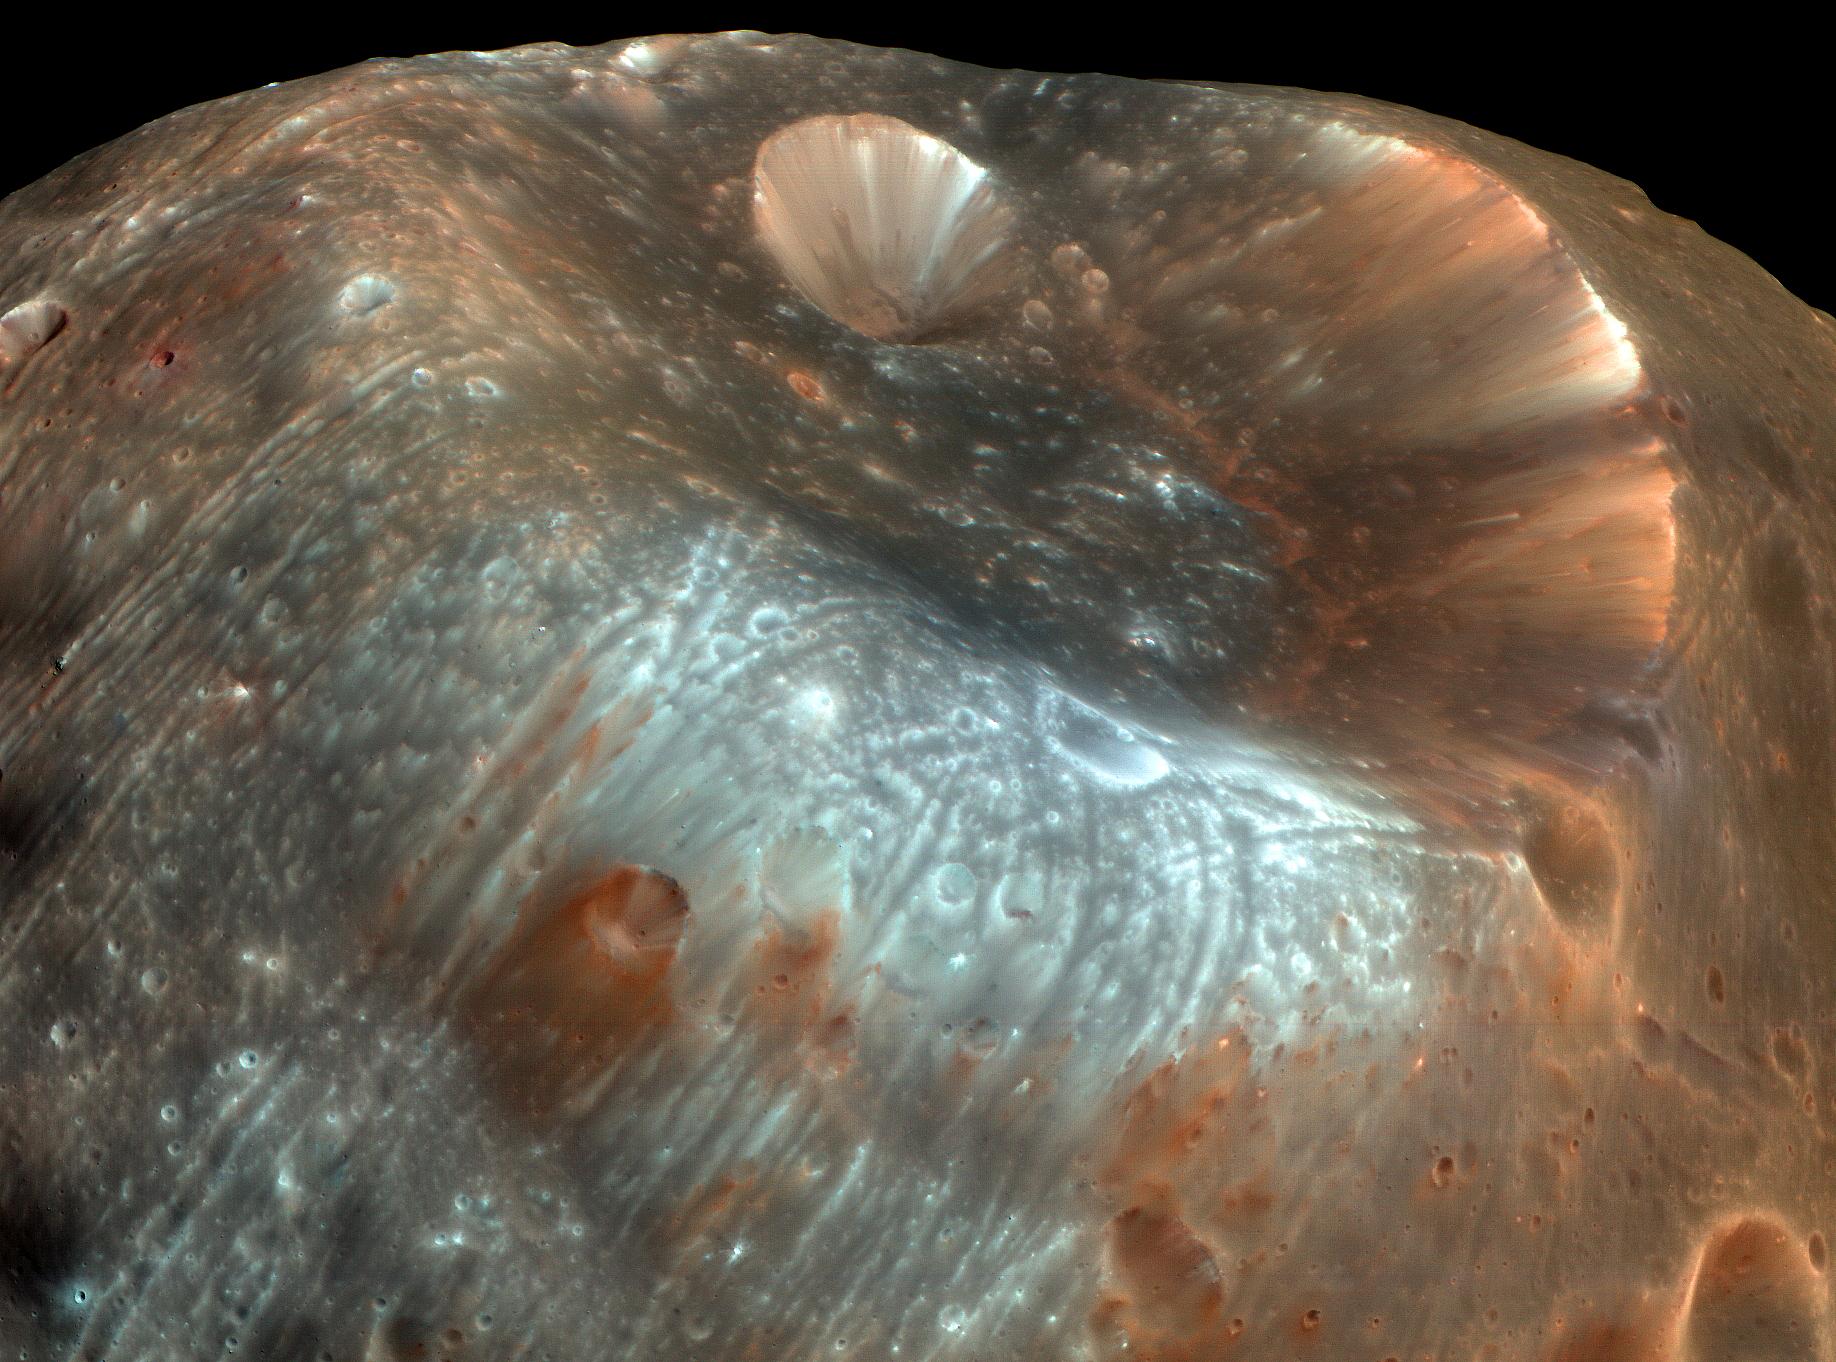 جزء من سطح قمر فوپوس غريب الشكل يُظهر فوّهة ستيكني وبعض التضاريس المحيطة بألوان معدنيّة تقريباً